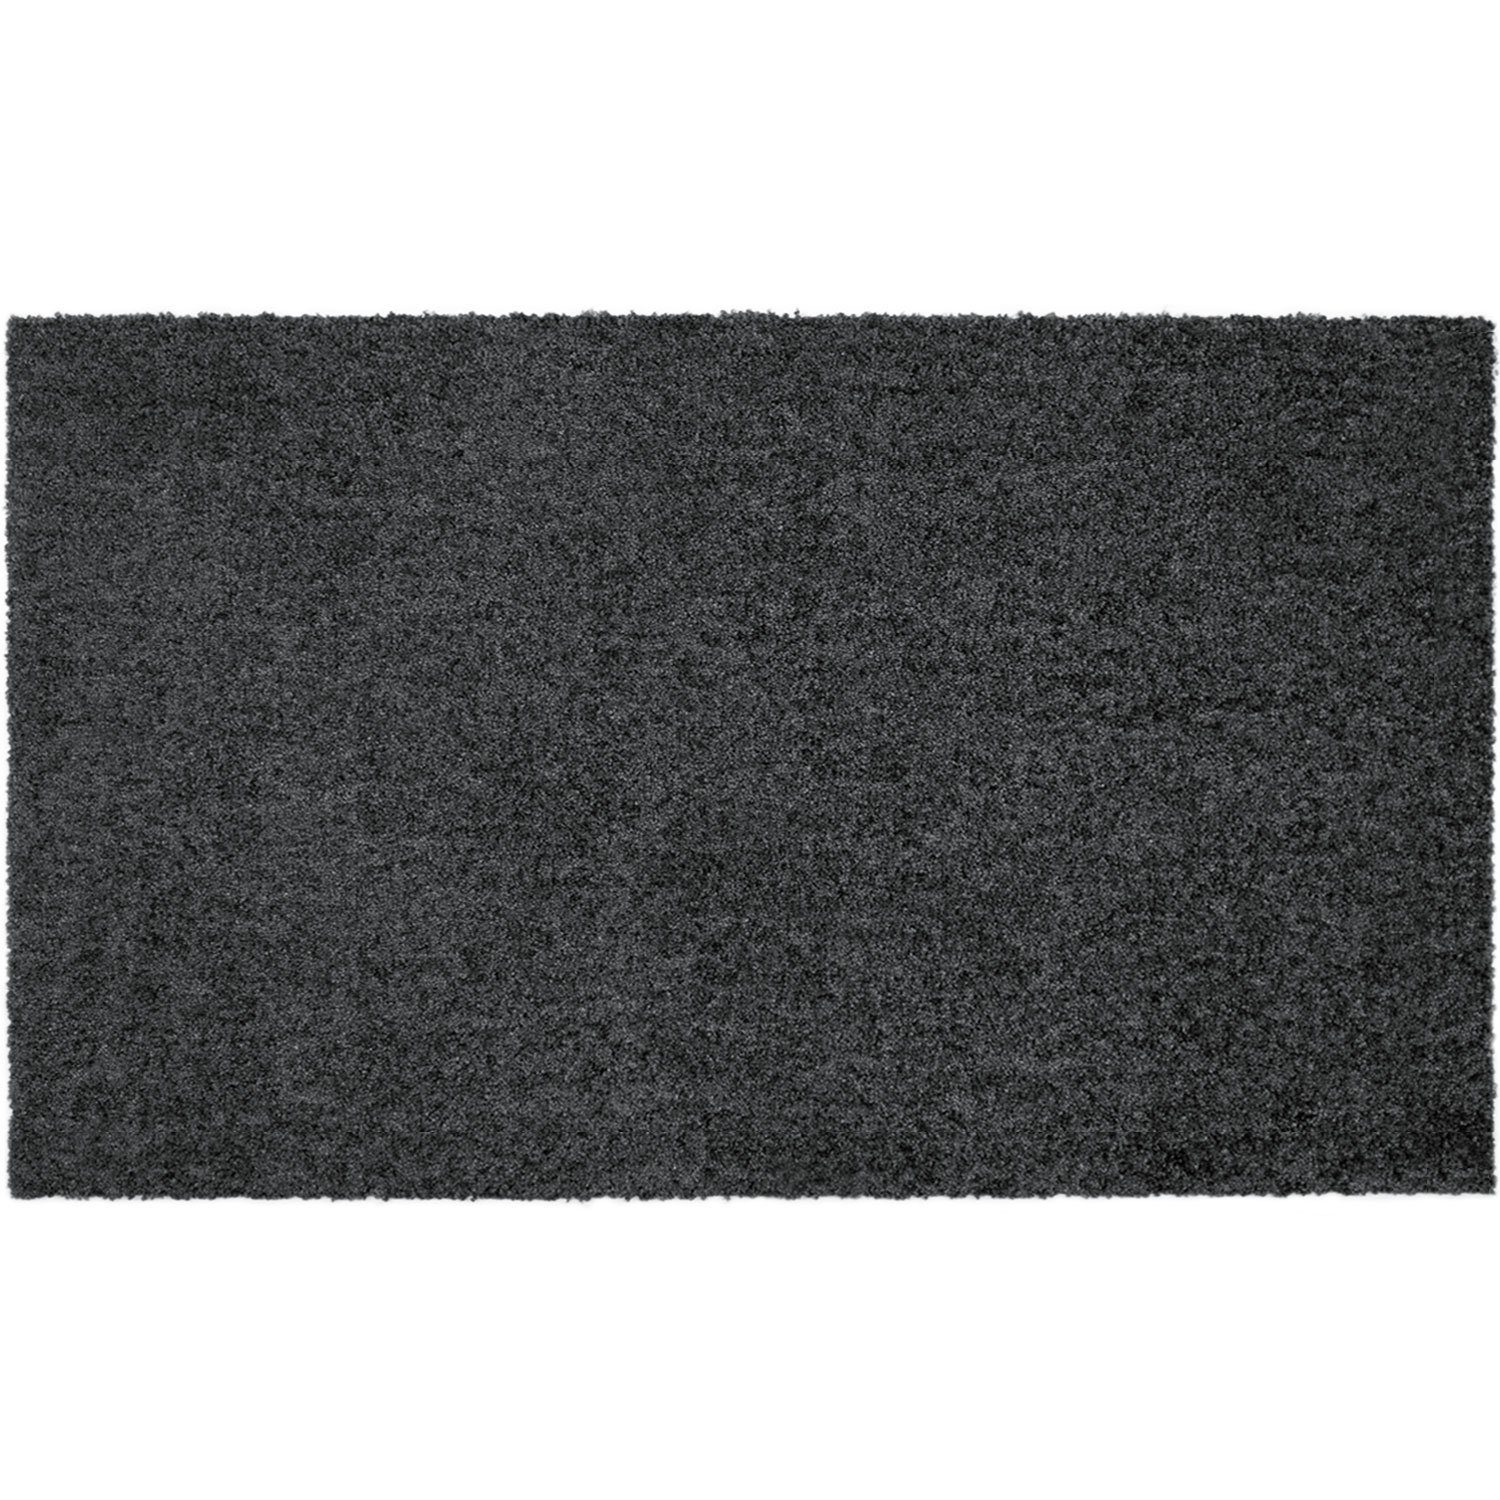 Fußmatte »MOCAVI Step Design-Fußmatte randlos anthrazit 60 x 100 cm  Sauberlaufmatte uni«, MOCAVI, Höhe 9 mm online kaufen | OTTO